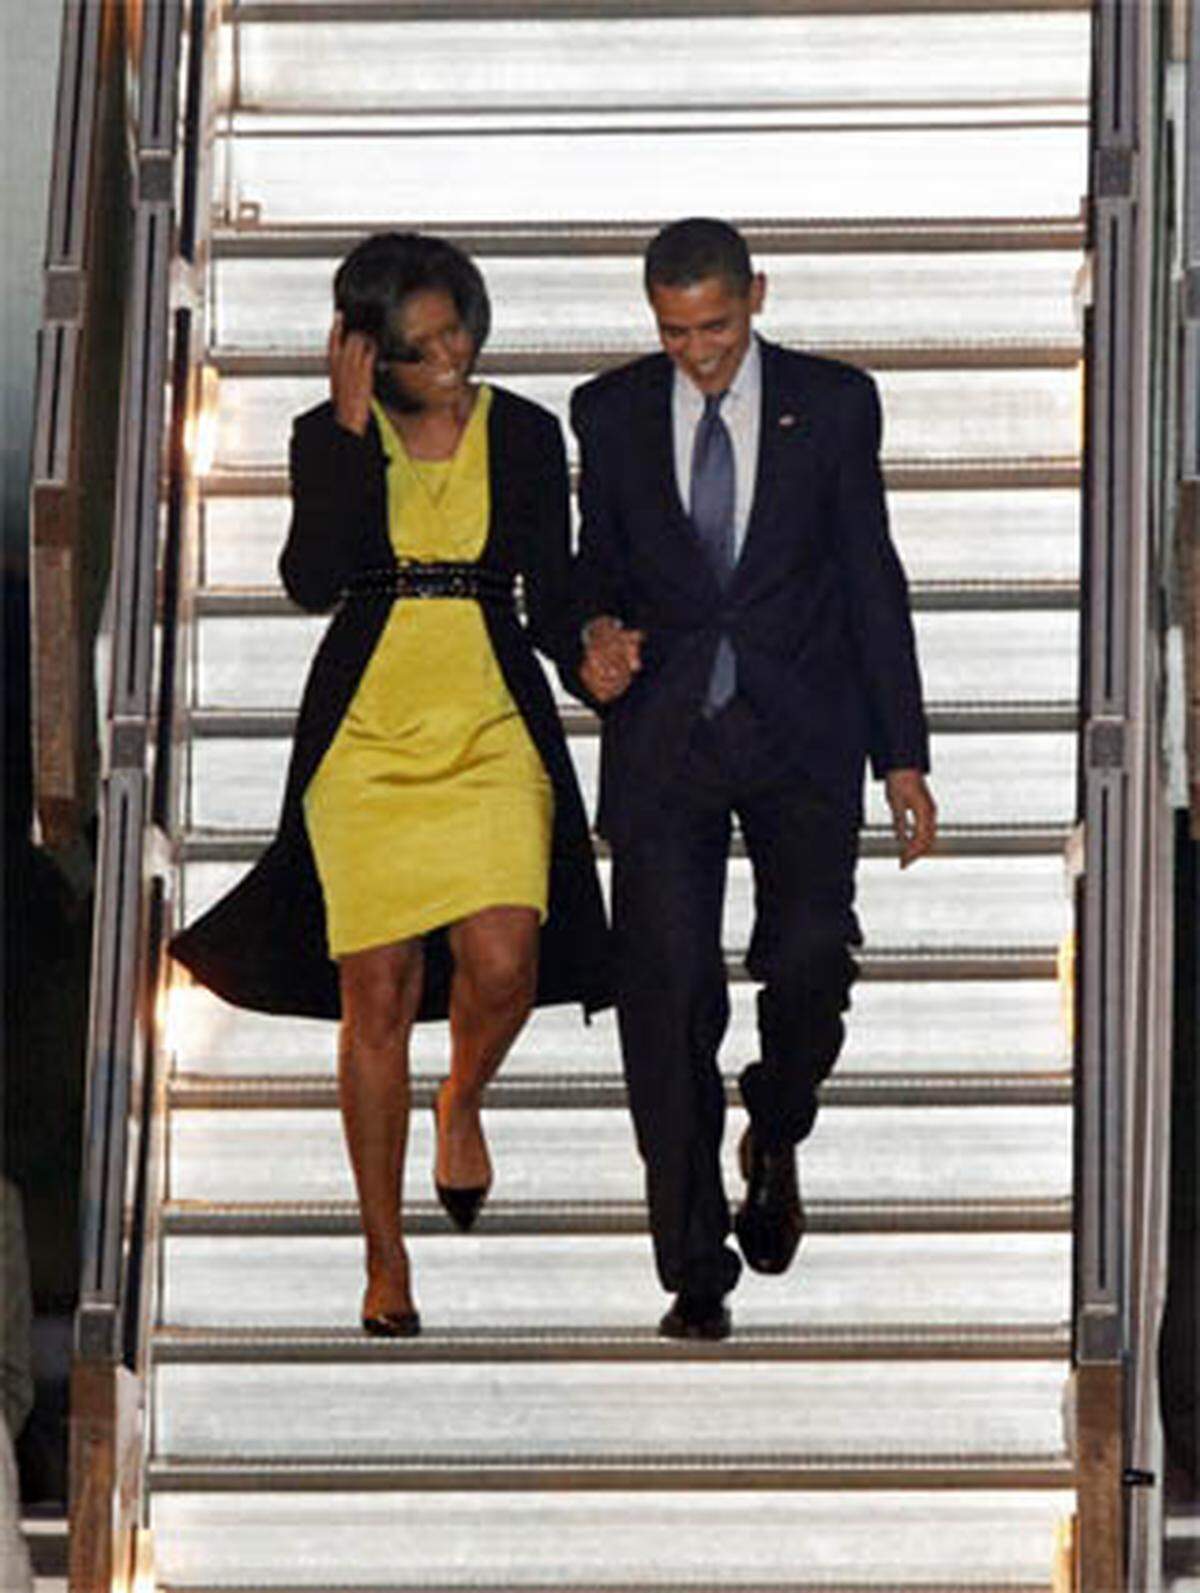 US-Präsident Barack Obama und seine Frau Michelle sind am Dienstagabend in London eingetroffen. Es ist Obamas erste Amtsreise durch Europa. Dank der Wirtschaftskrise wird die Reise des Wunsch-Präsidenten der Europäer aber nicht zur Glamour-Tour. Stattdessen stehen vor allem Arbeitssitzungen auf dem Mammut-Programm.